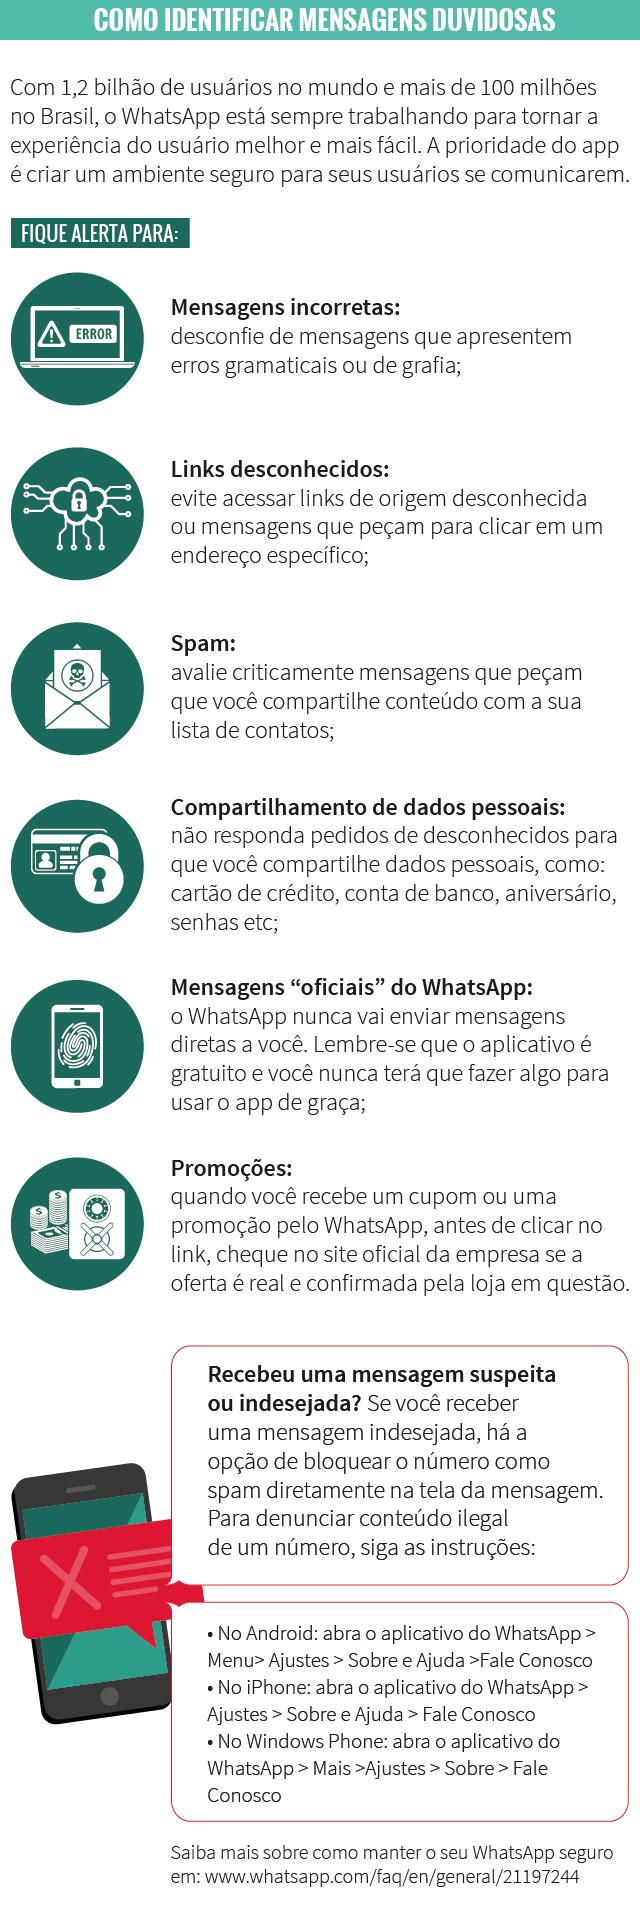 WhatsApp vai cobrar pelo uso? É boato  23272982